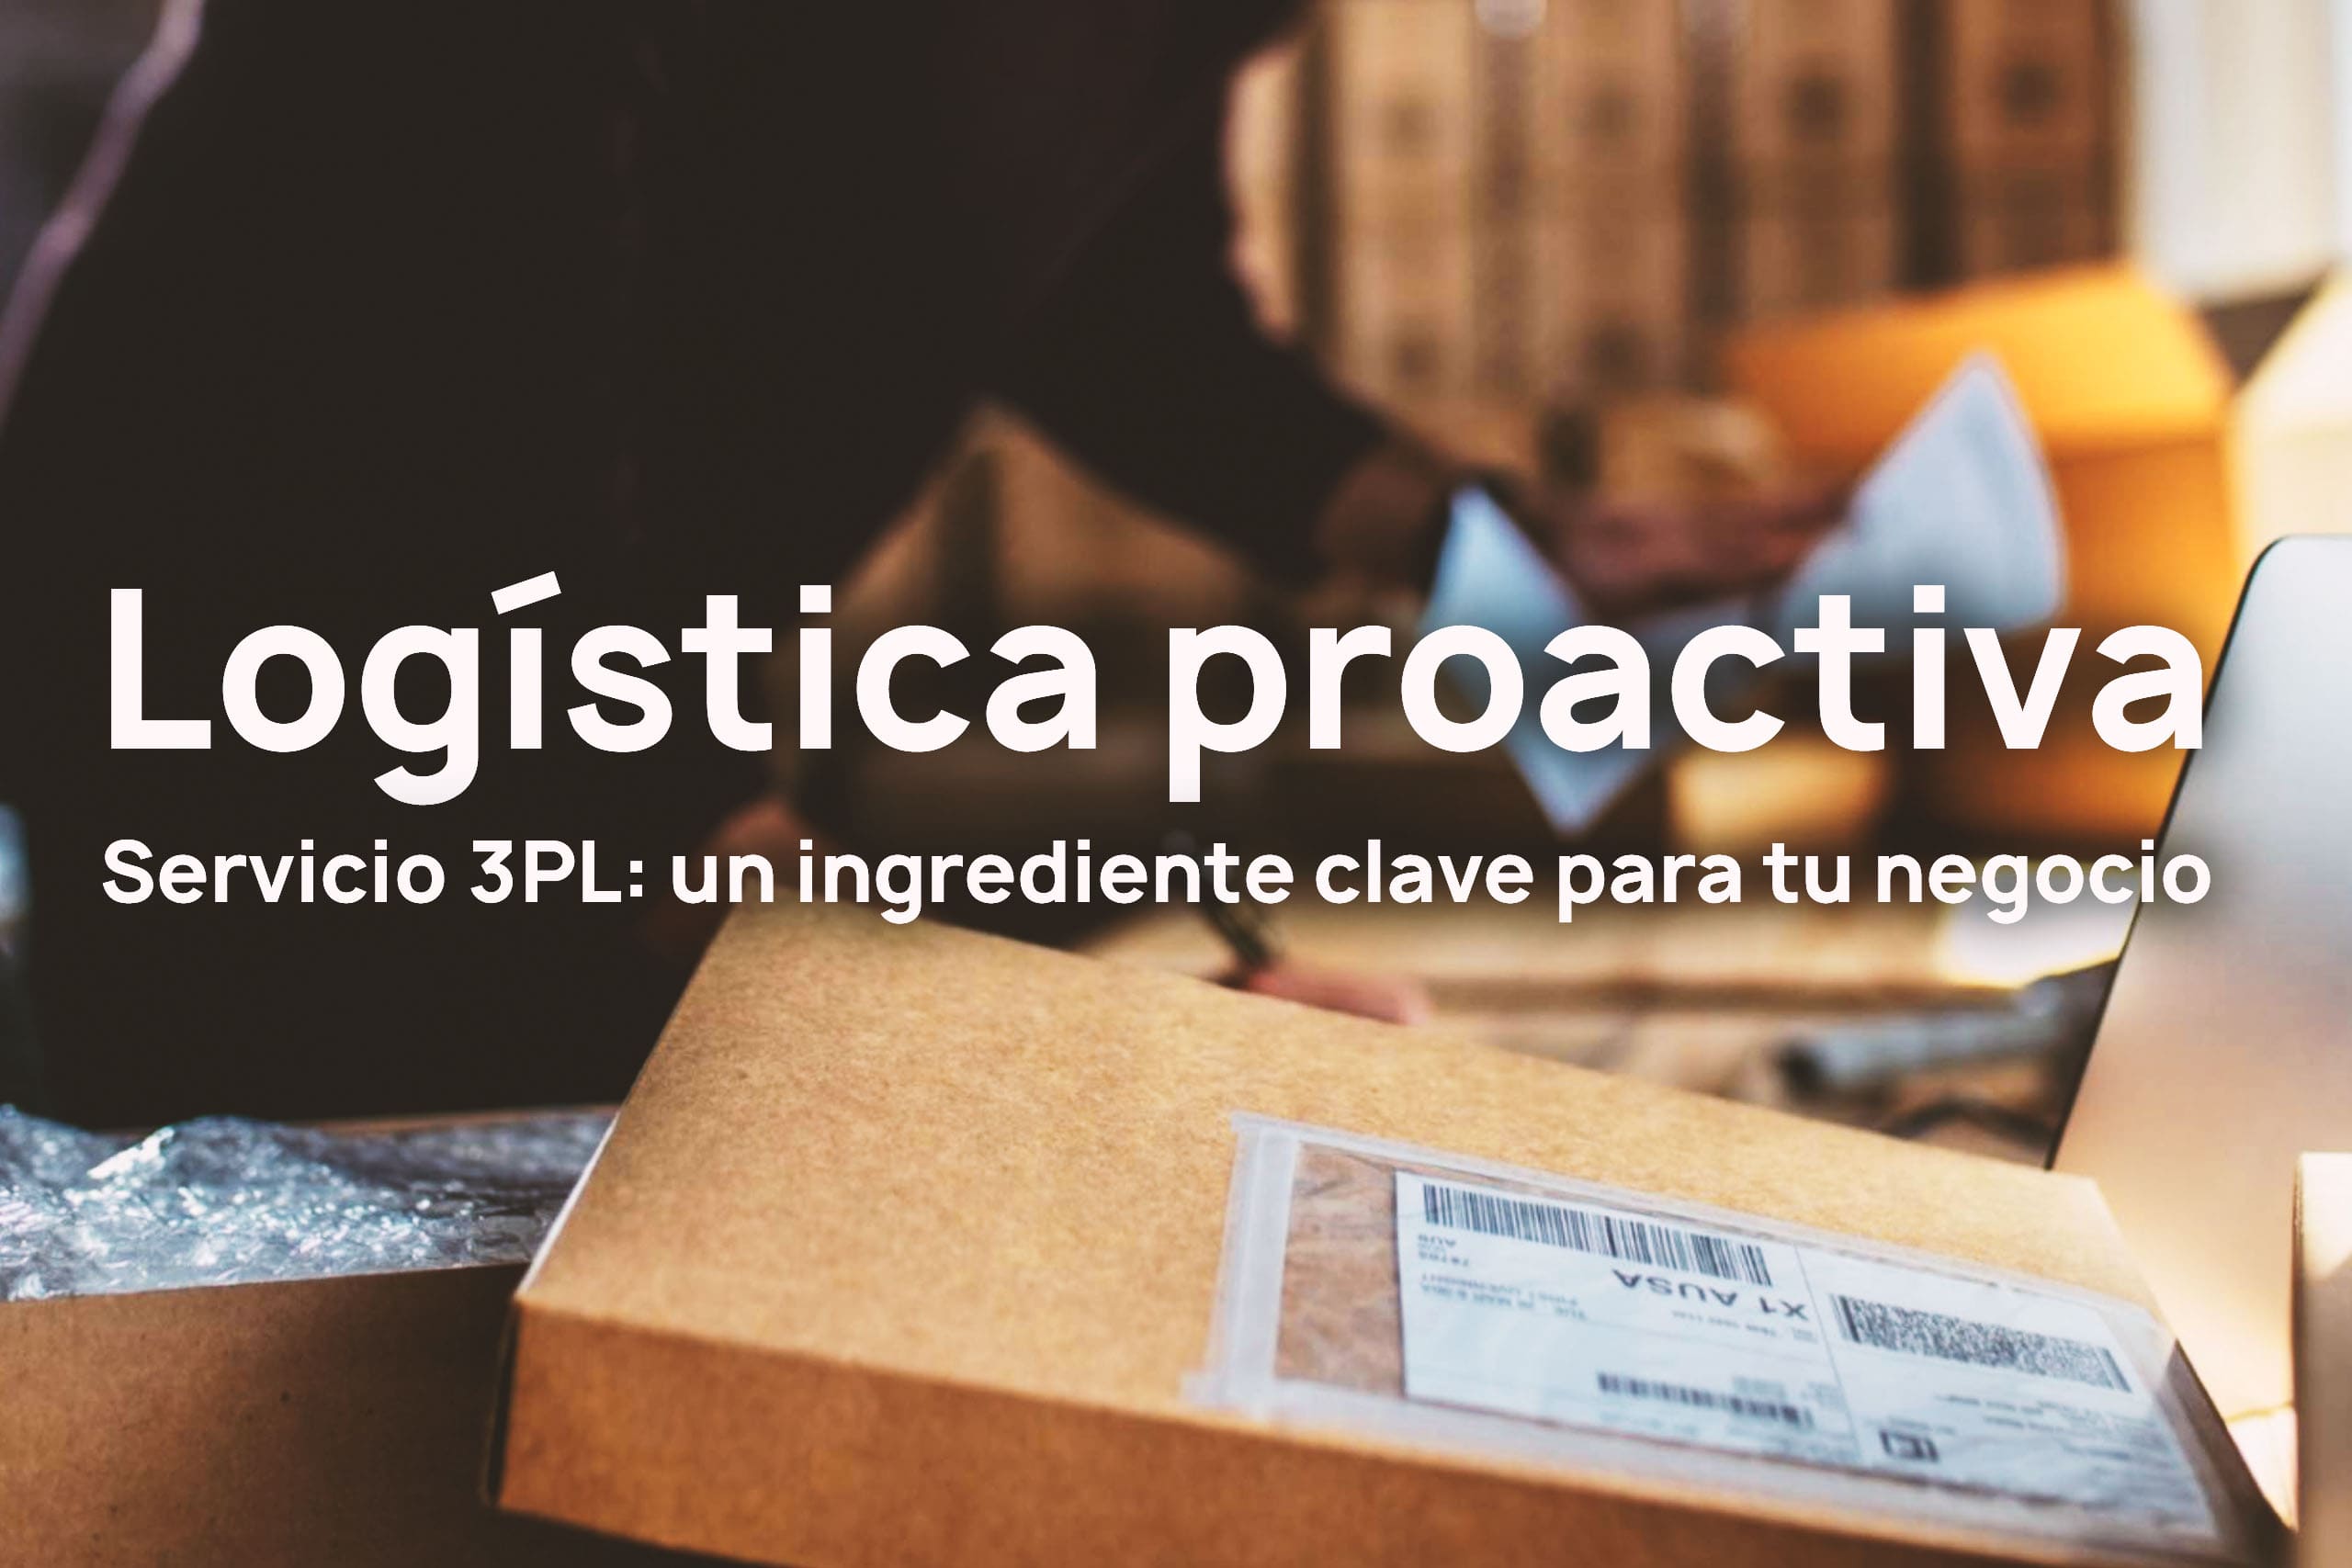 Logística proactiva: servicio 3PL un ingrediente clave para tu negocio